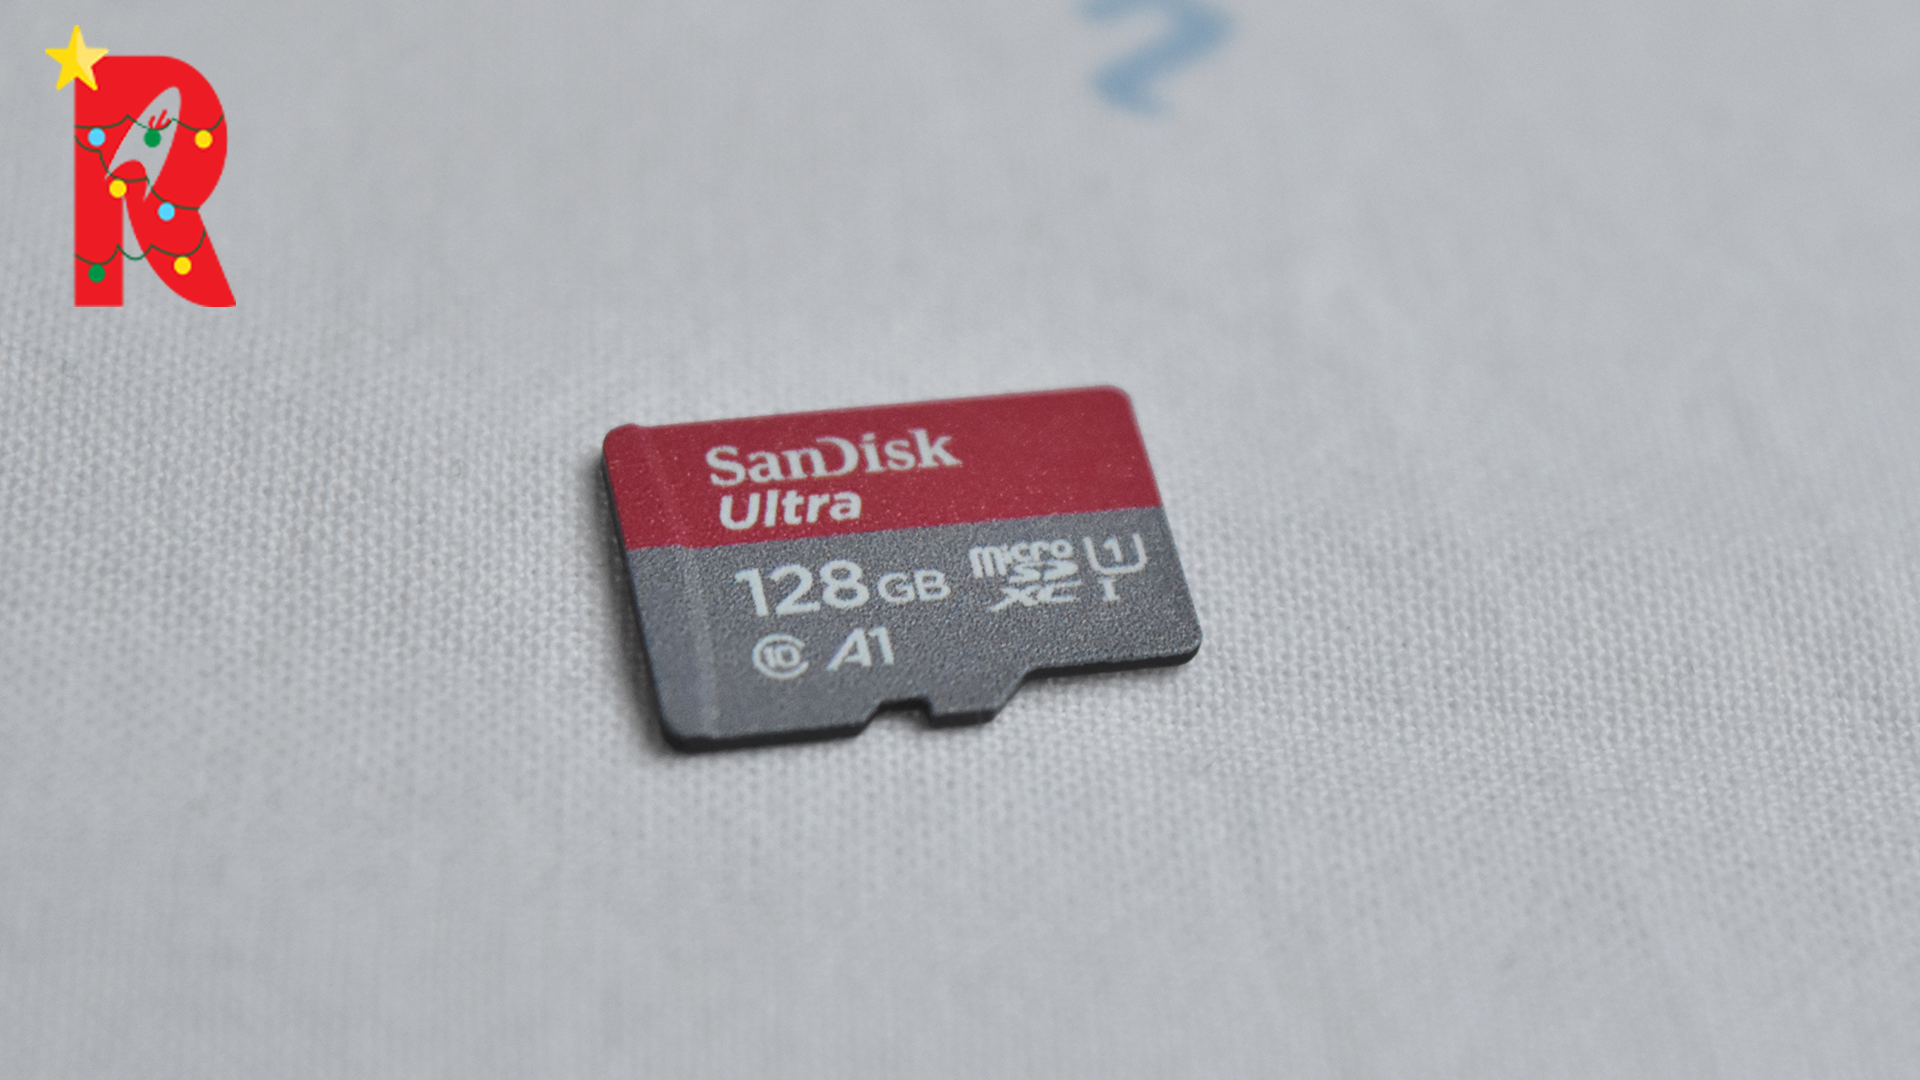 SanDisk MicroSDHC Ultra 128 Go : un cadeau complément pour Noël !